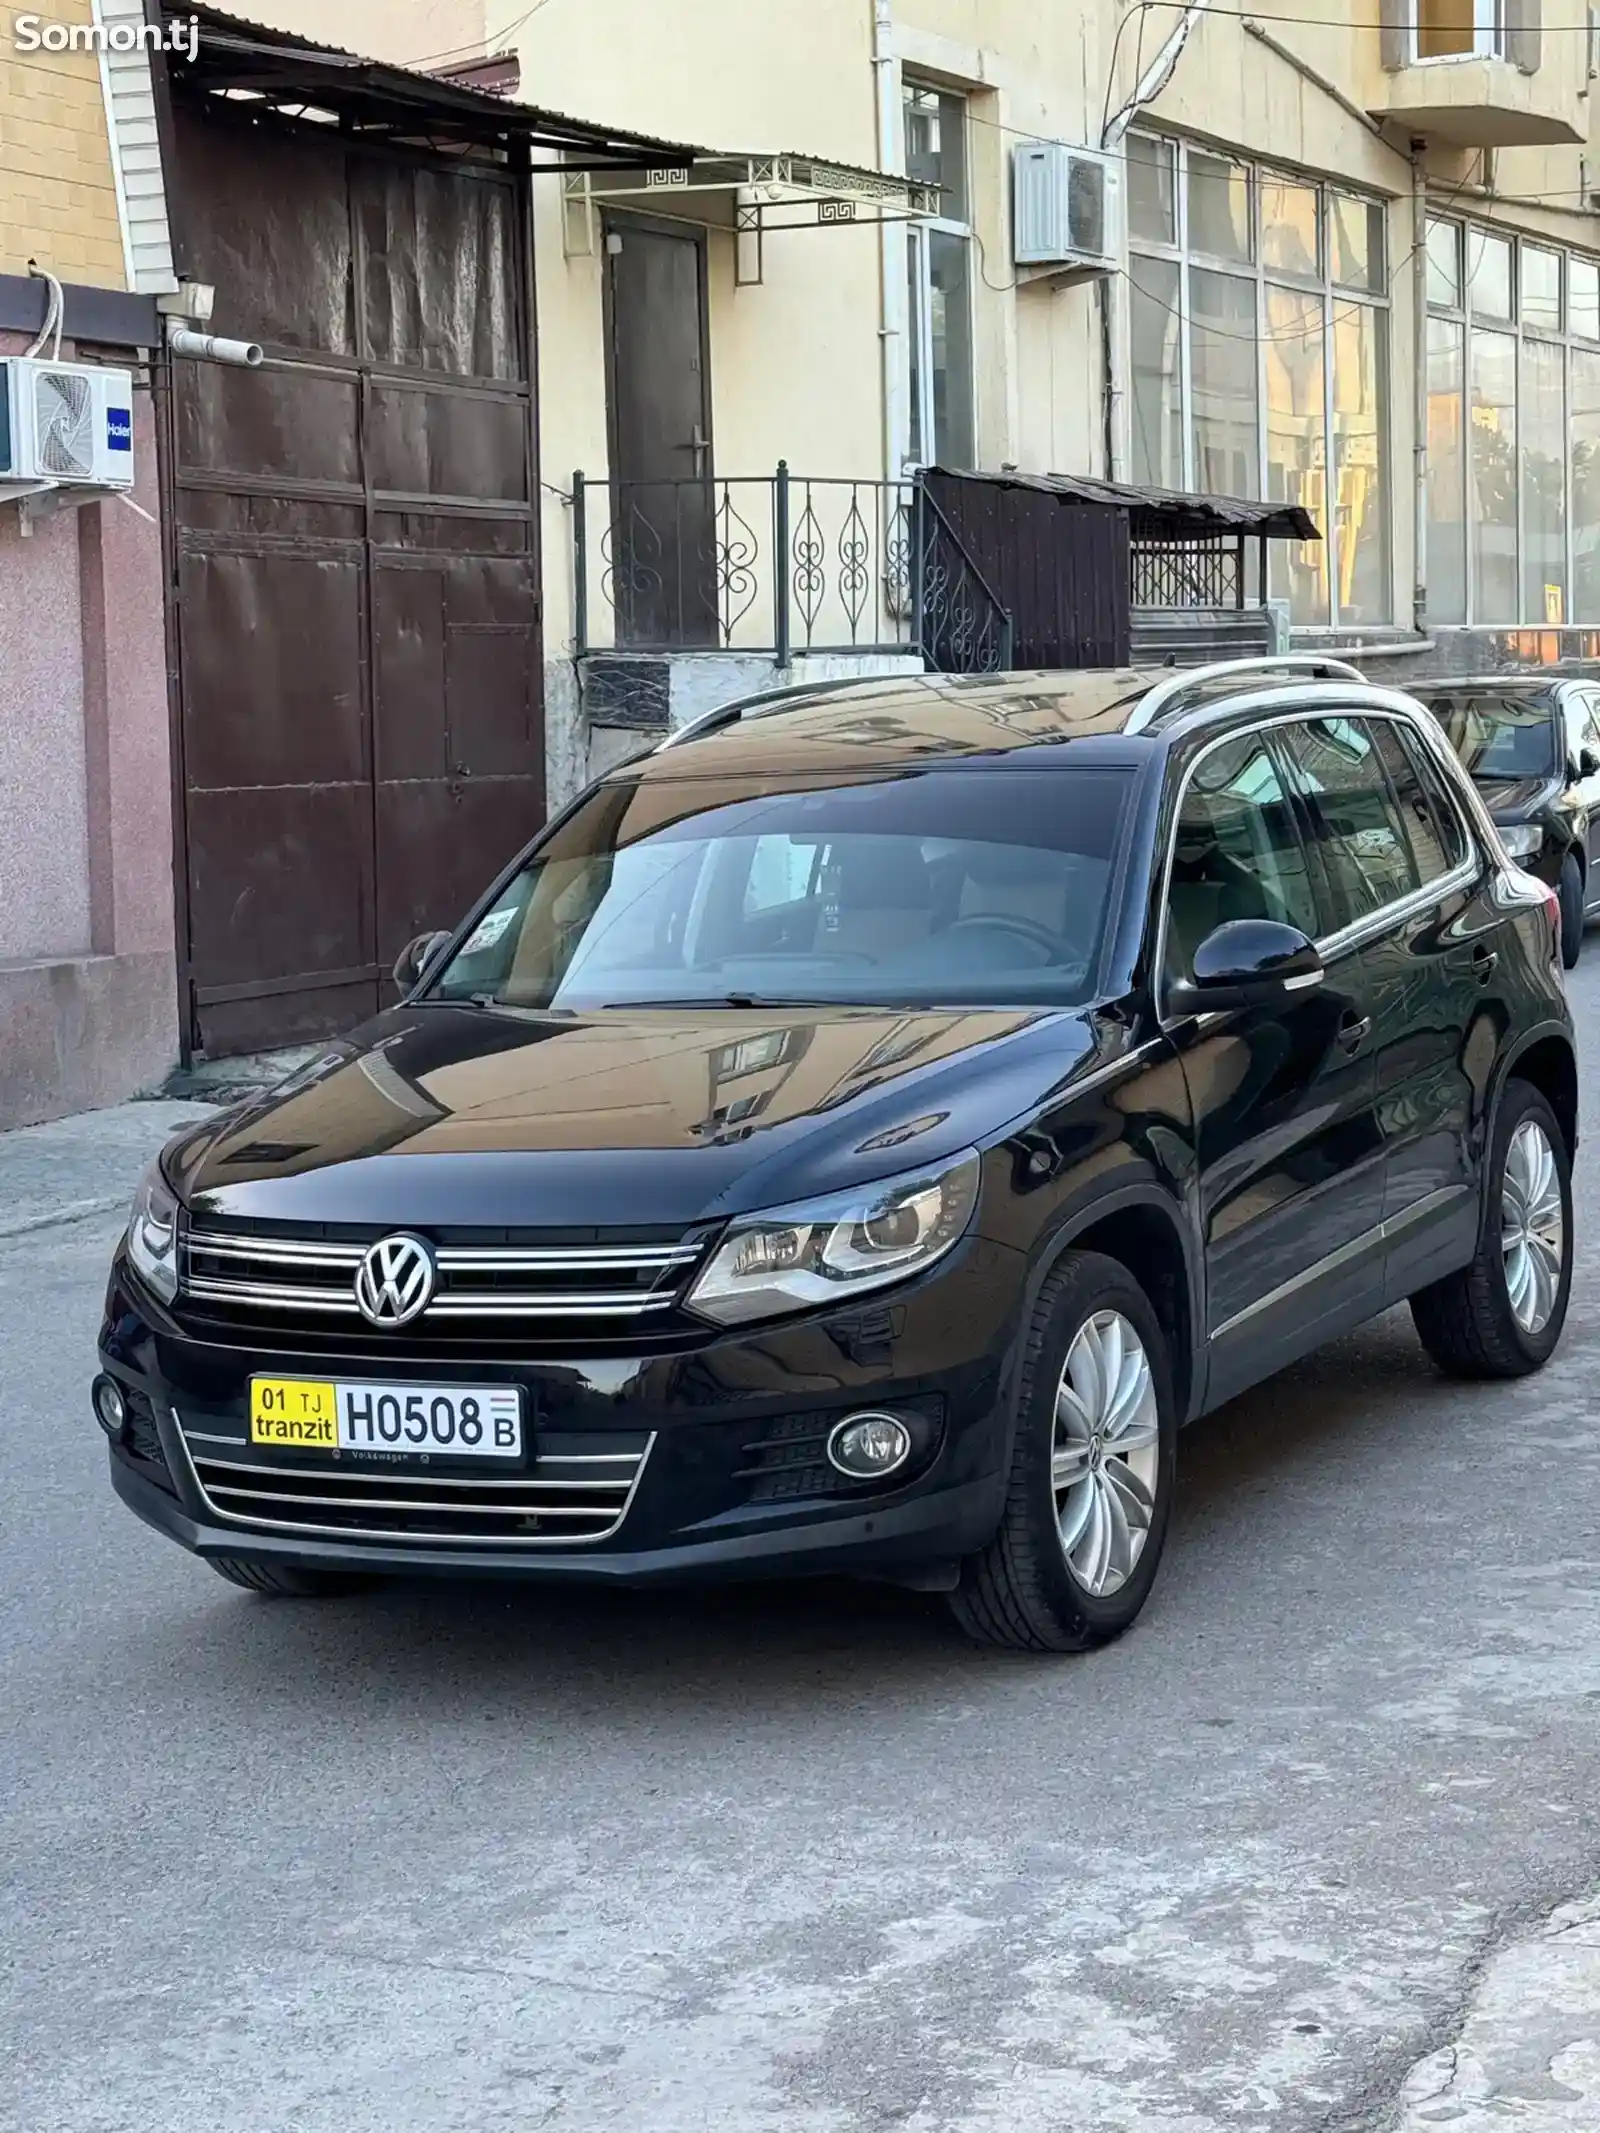 Volkswagen Tiguan, 2012-2